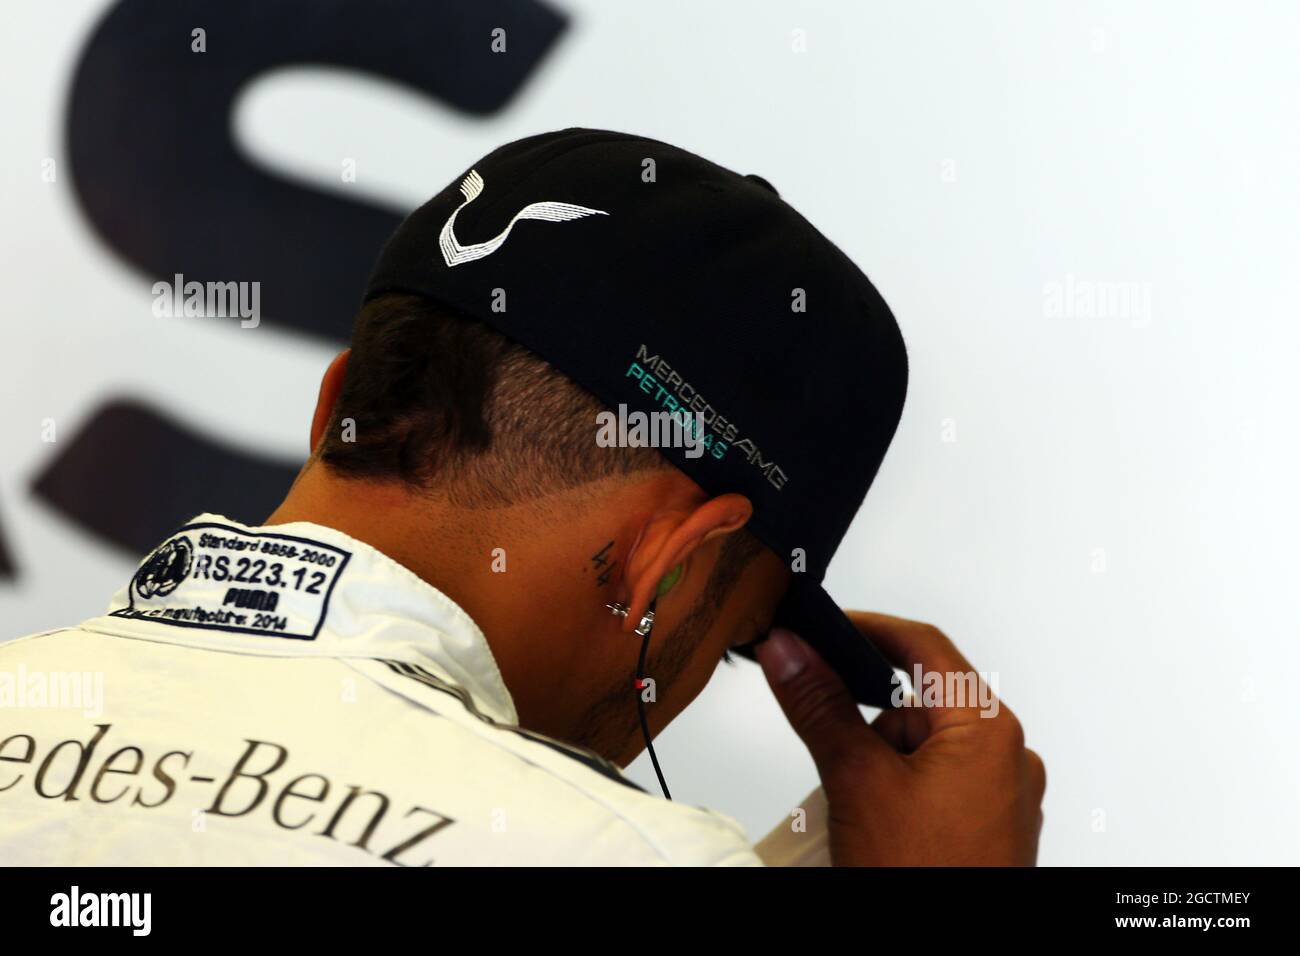 Lewis Hamilton (GBR) Mercedes AMG F1 avec un tatouage de 44 près de son oreille. Grand Prix d'Autriche, vendredi 20 juin 2014. Spielberg, Autriche. Banque D'Images